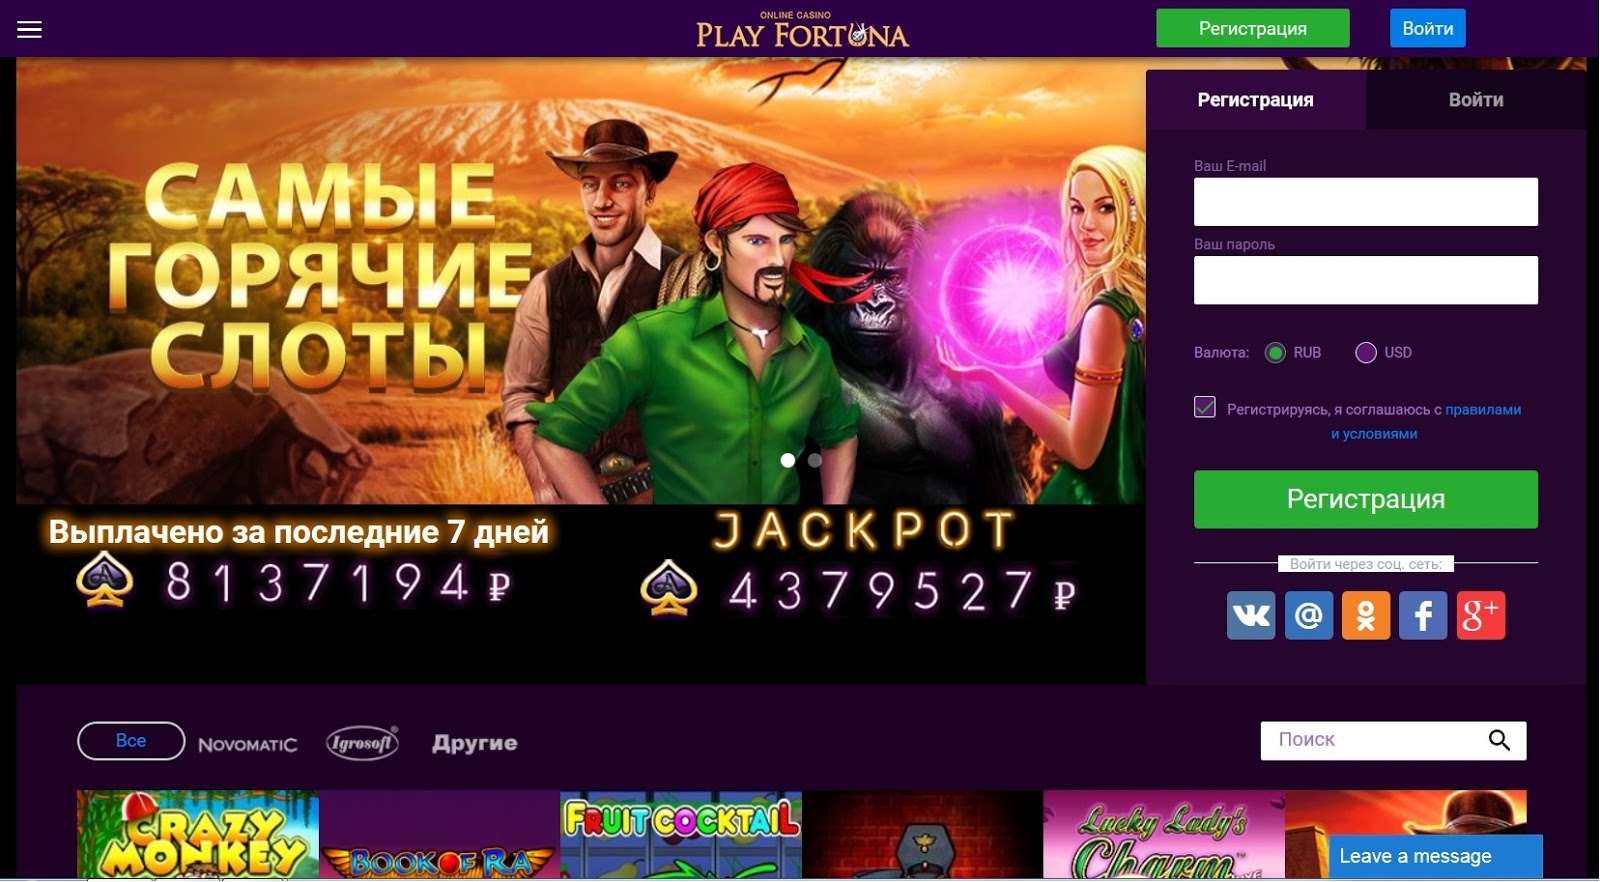 Плей фортуна казино онлайн зайти на джойказино не удается